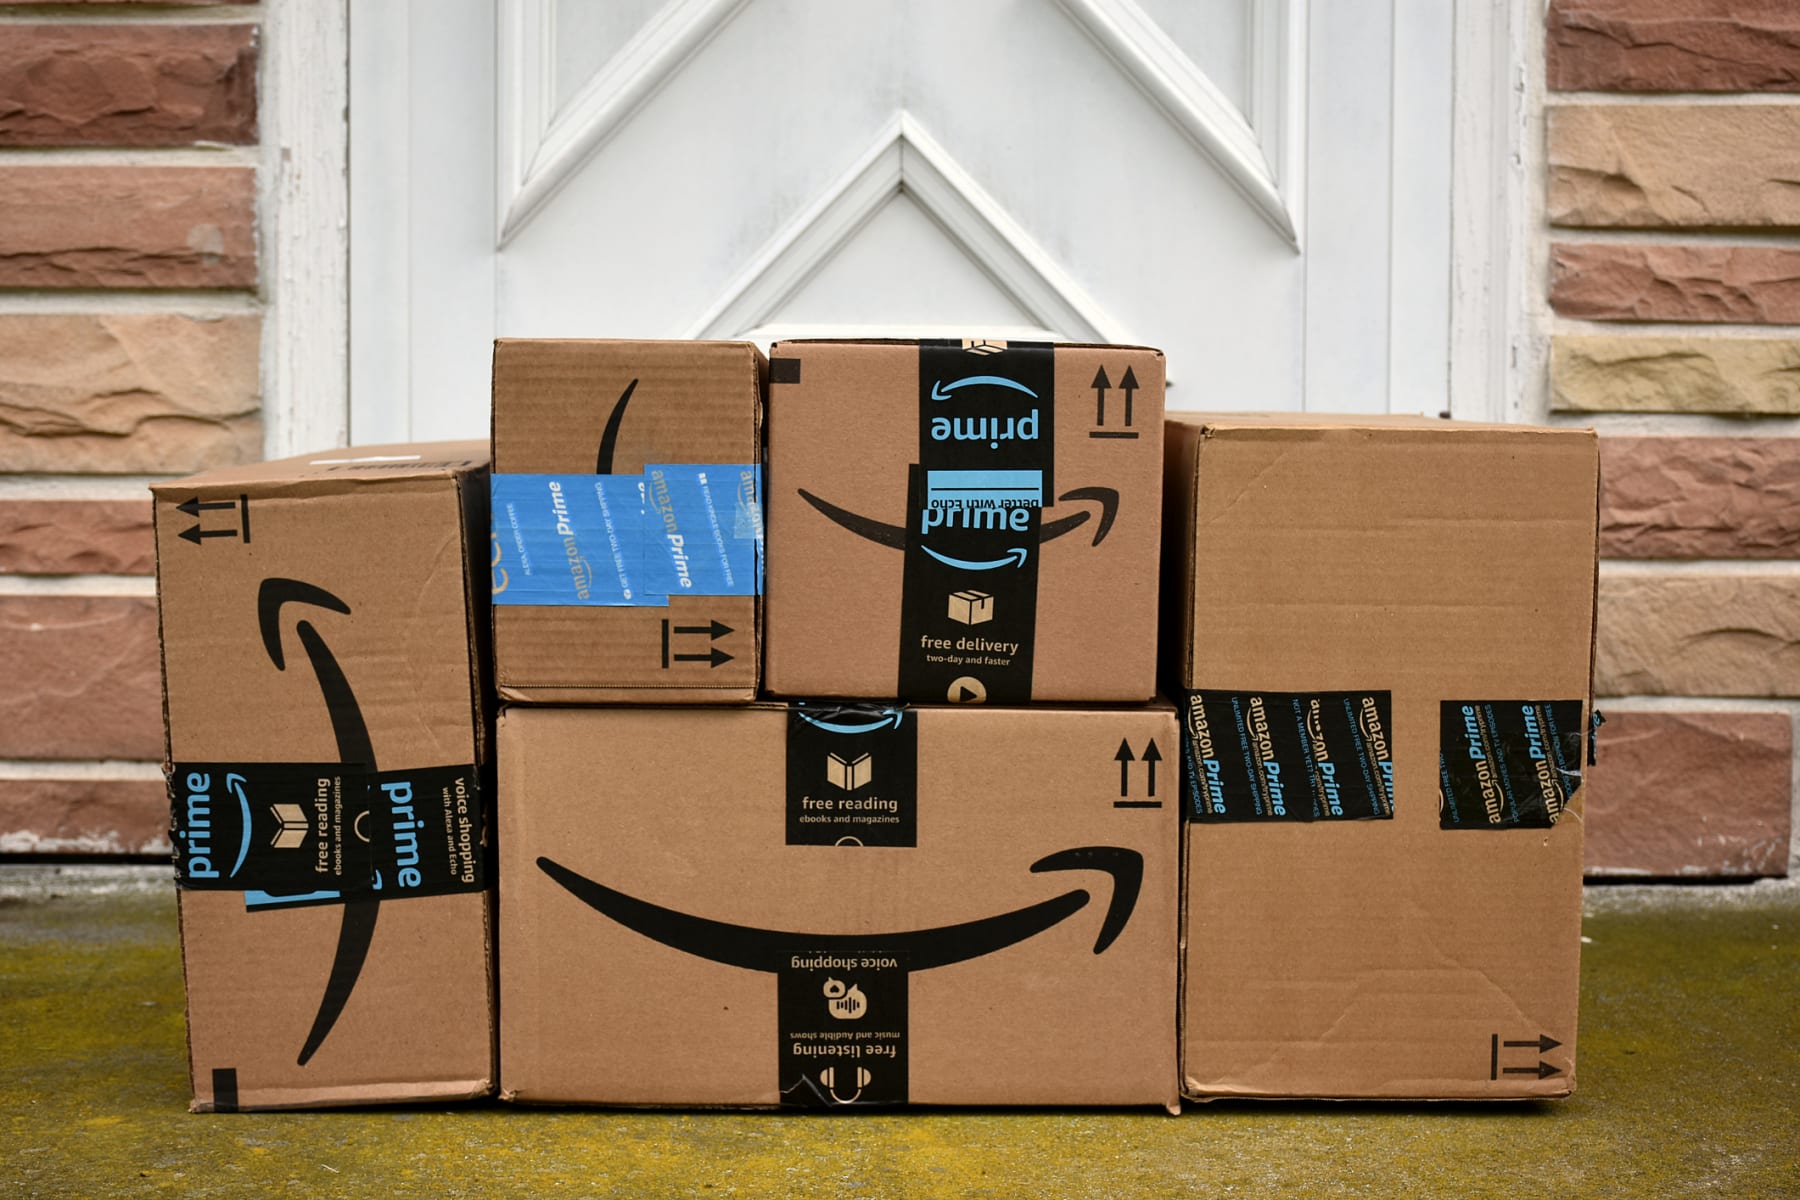 Amazon Prime packages arranged in front of door.